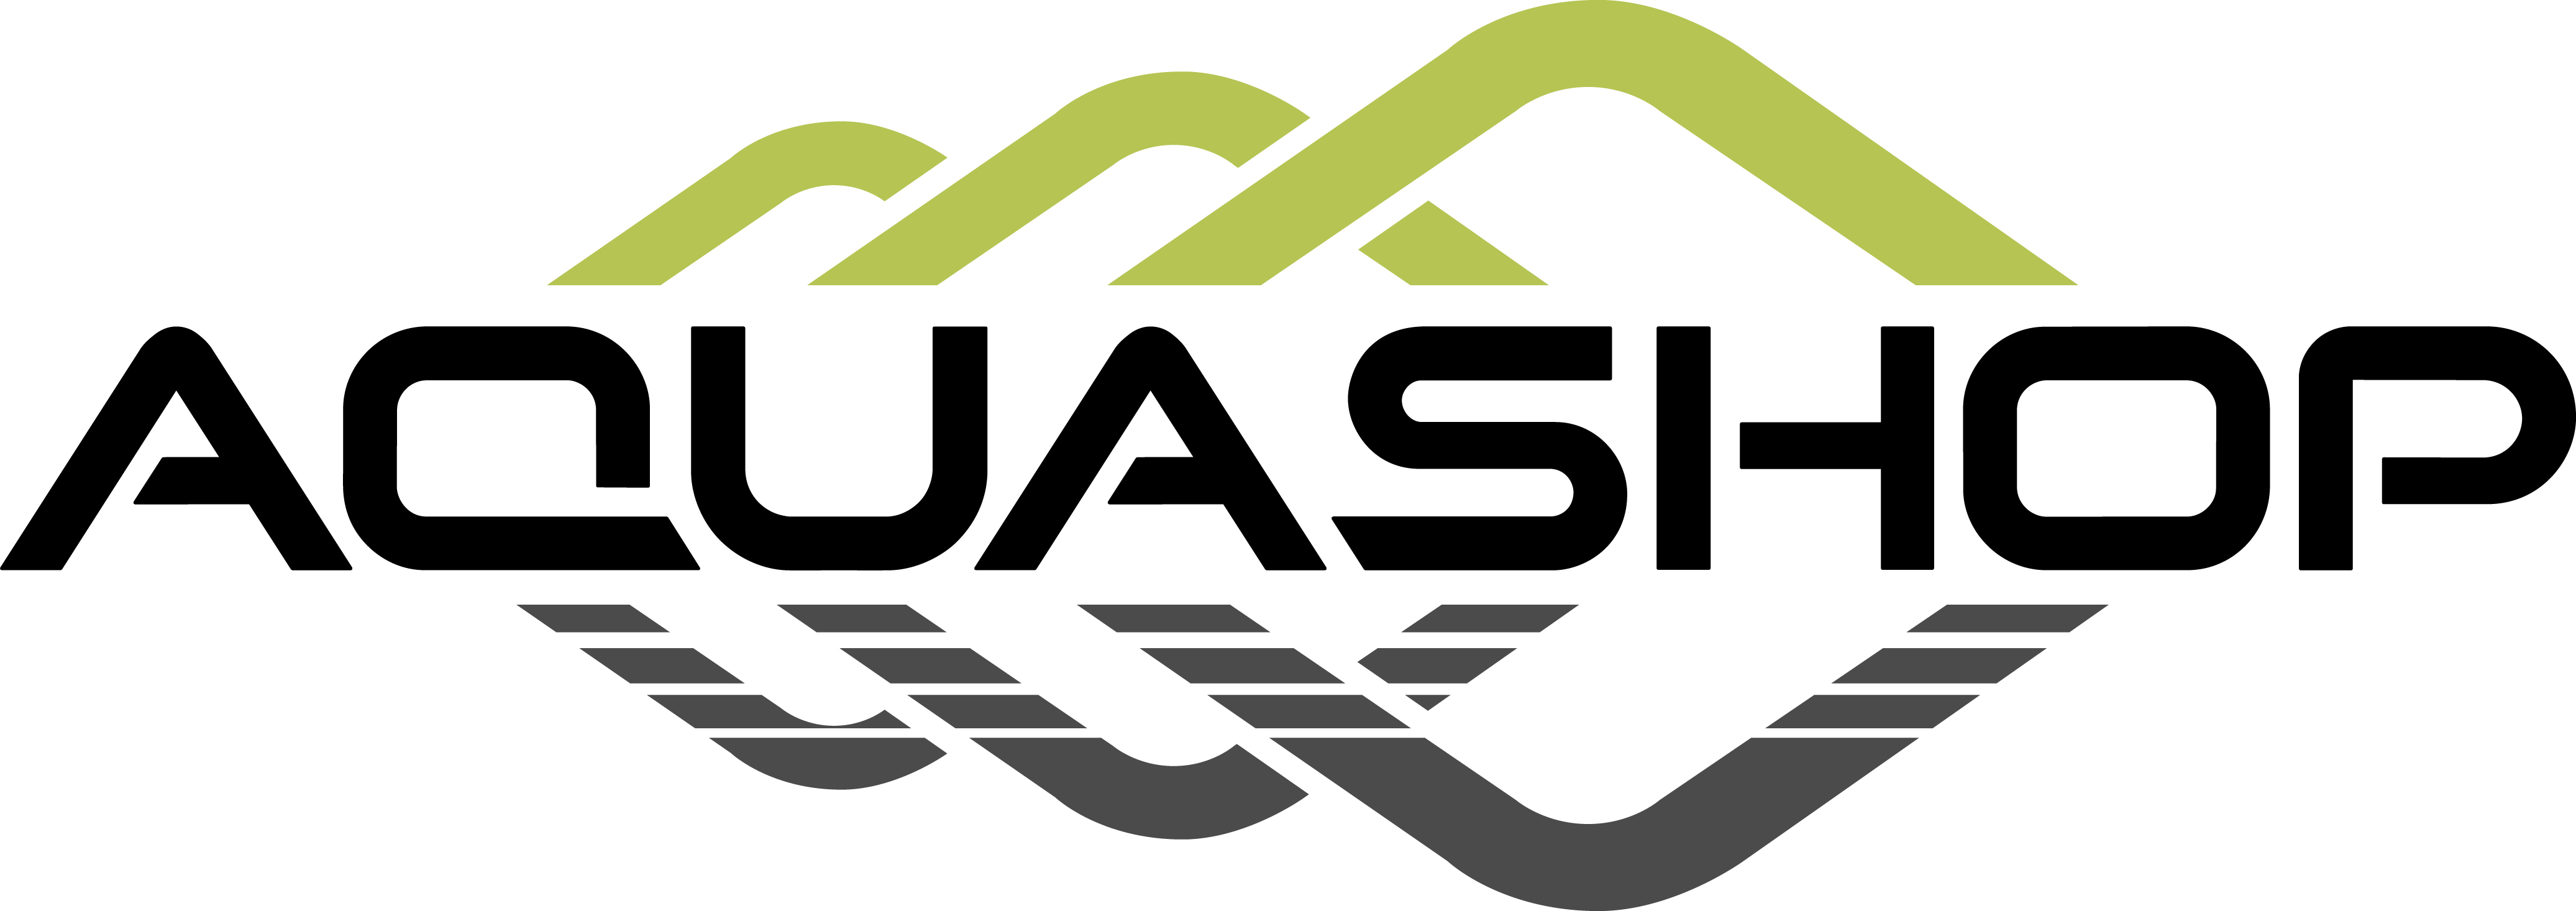 AquaShop logo